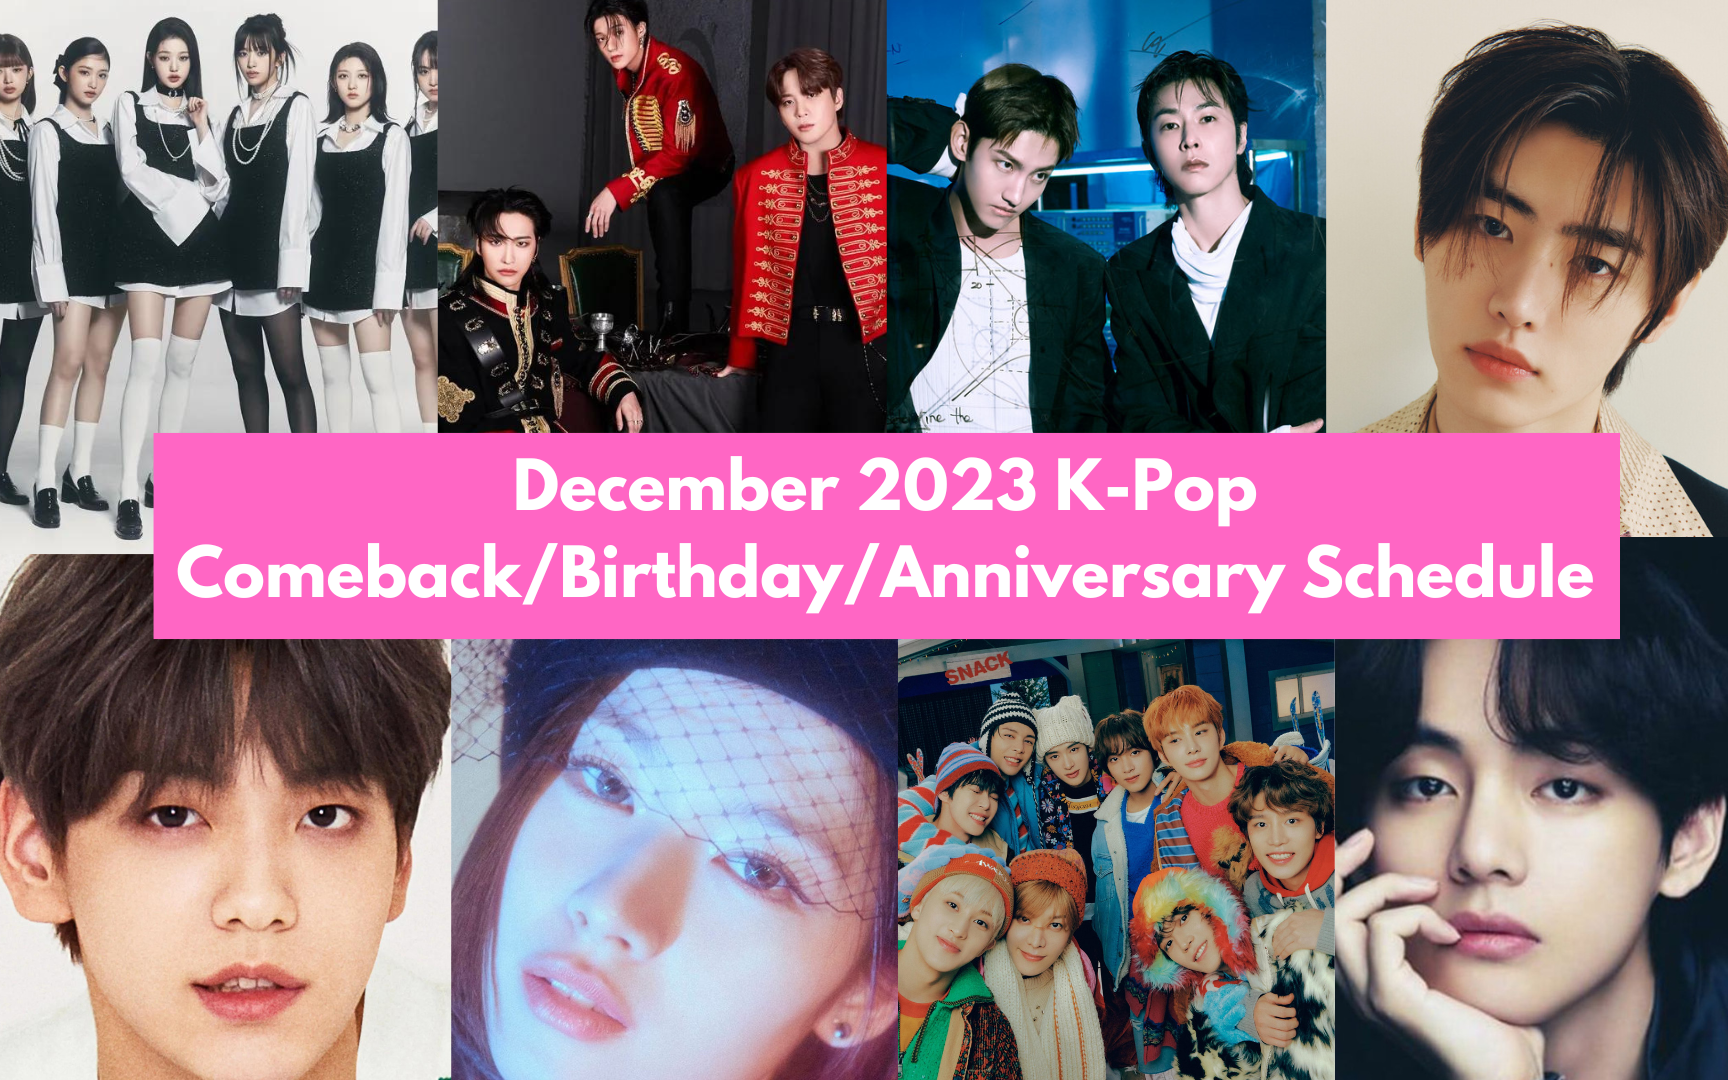 December 2023 K-Pop Comeback/Birthday/Anniversary Schedule